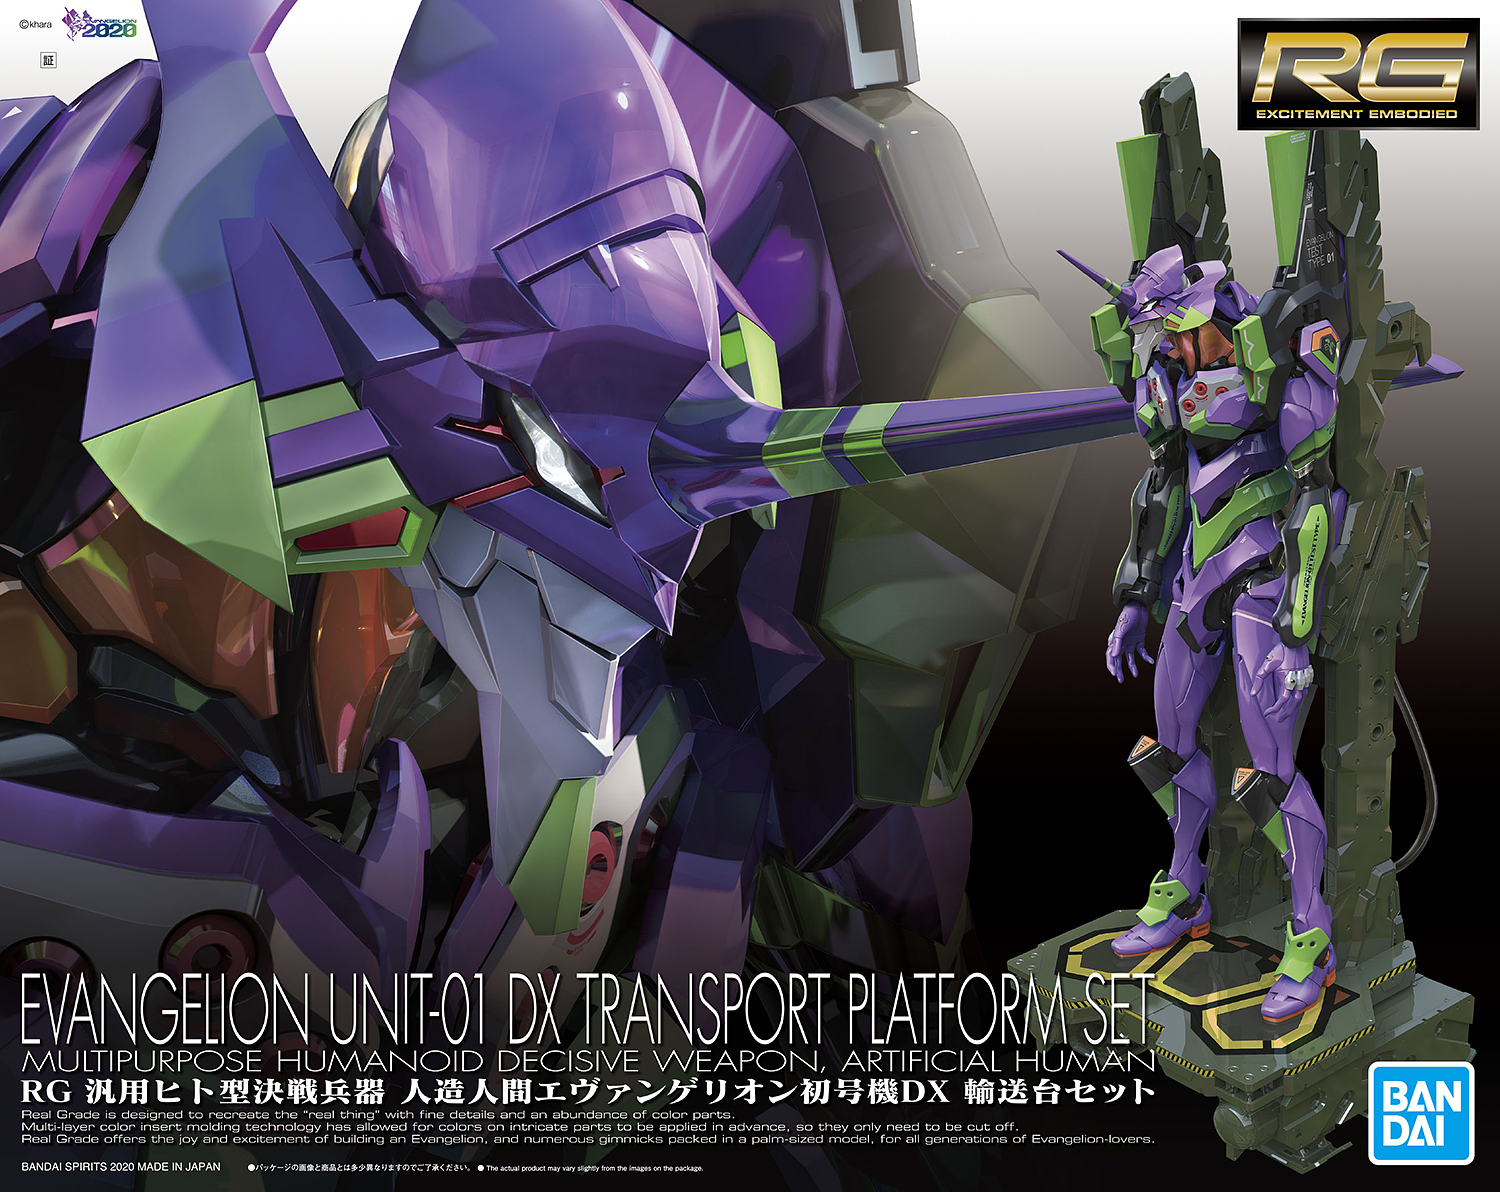 RG Evangelion Unit-01 DX Transport Platform Set